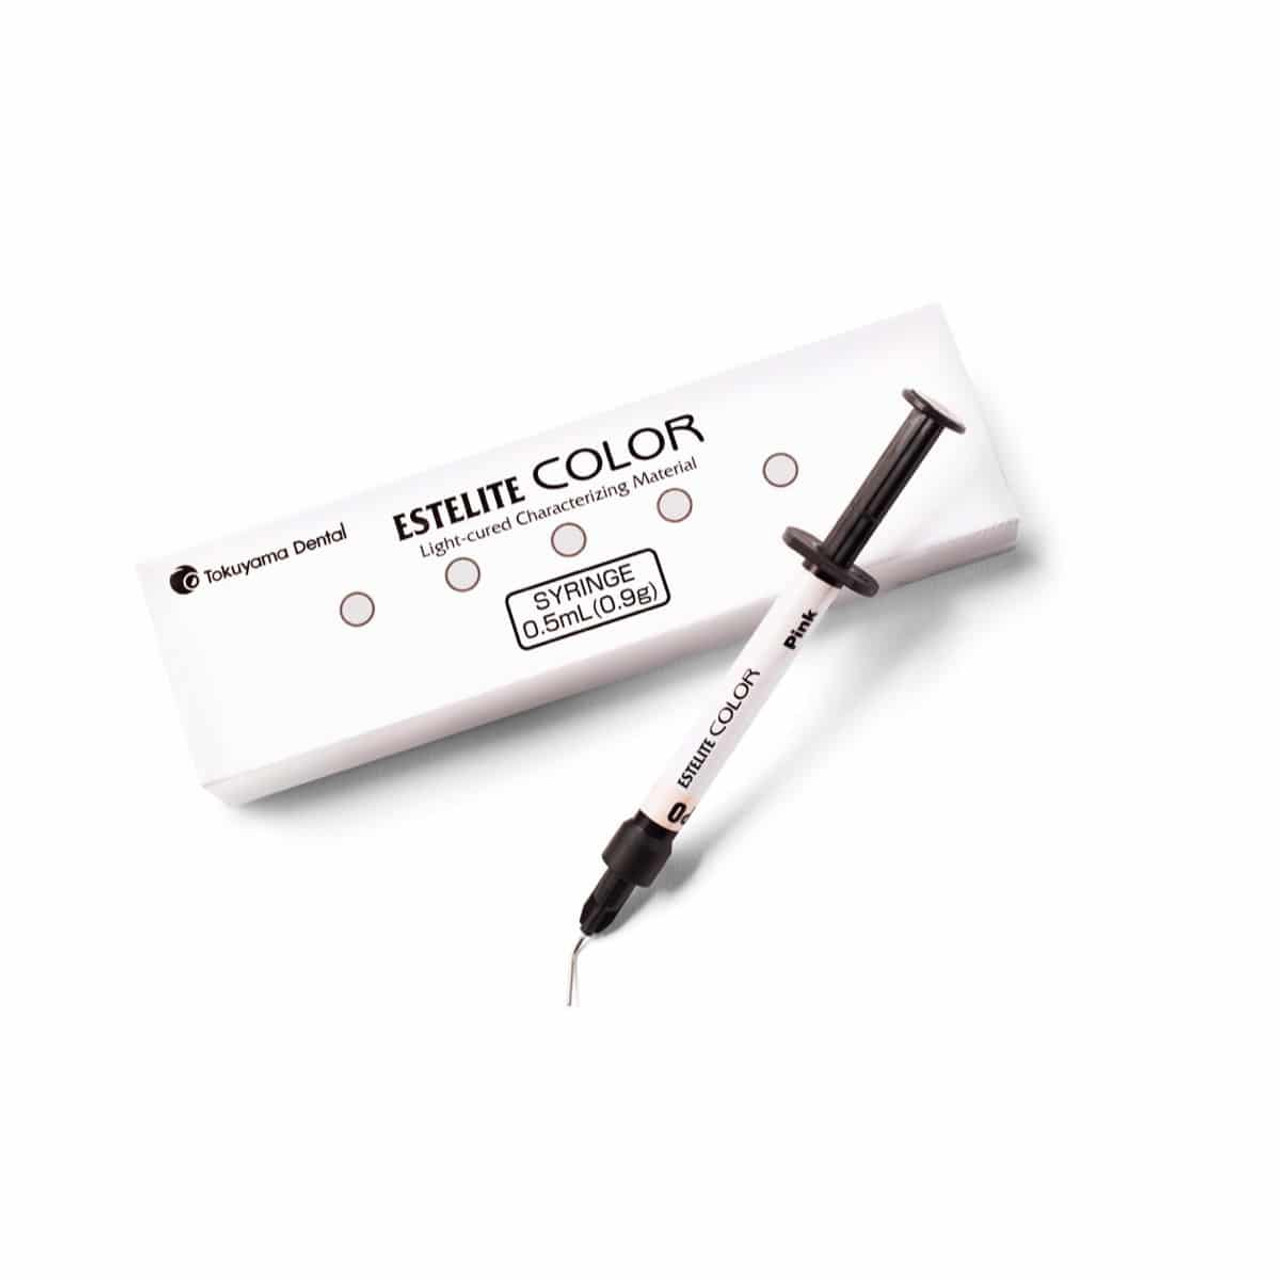 Tokuyama - Estelite Color (Medium Chroma Opaque) Syringe + Tips